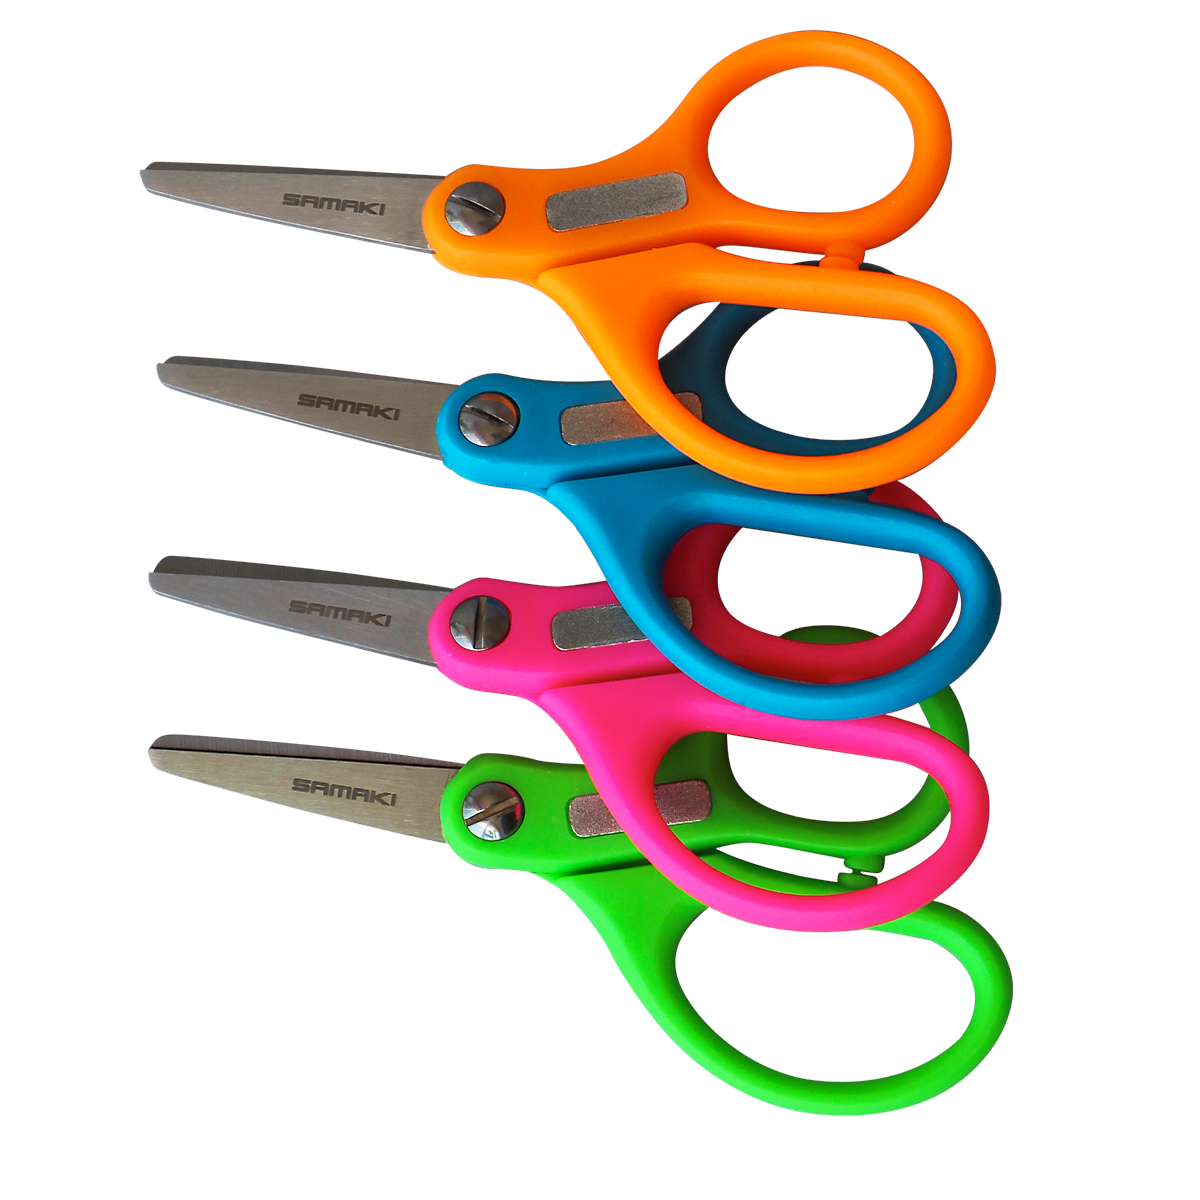 Multi Coloured Braid Scissors / 32 pieces